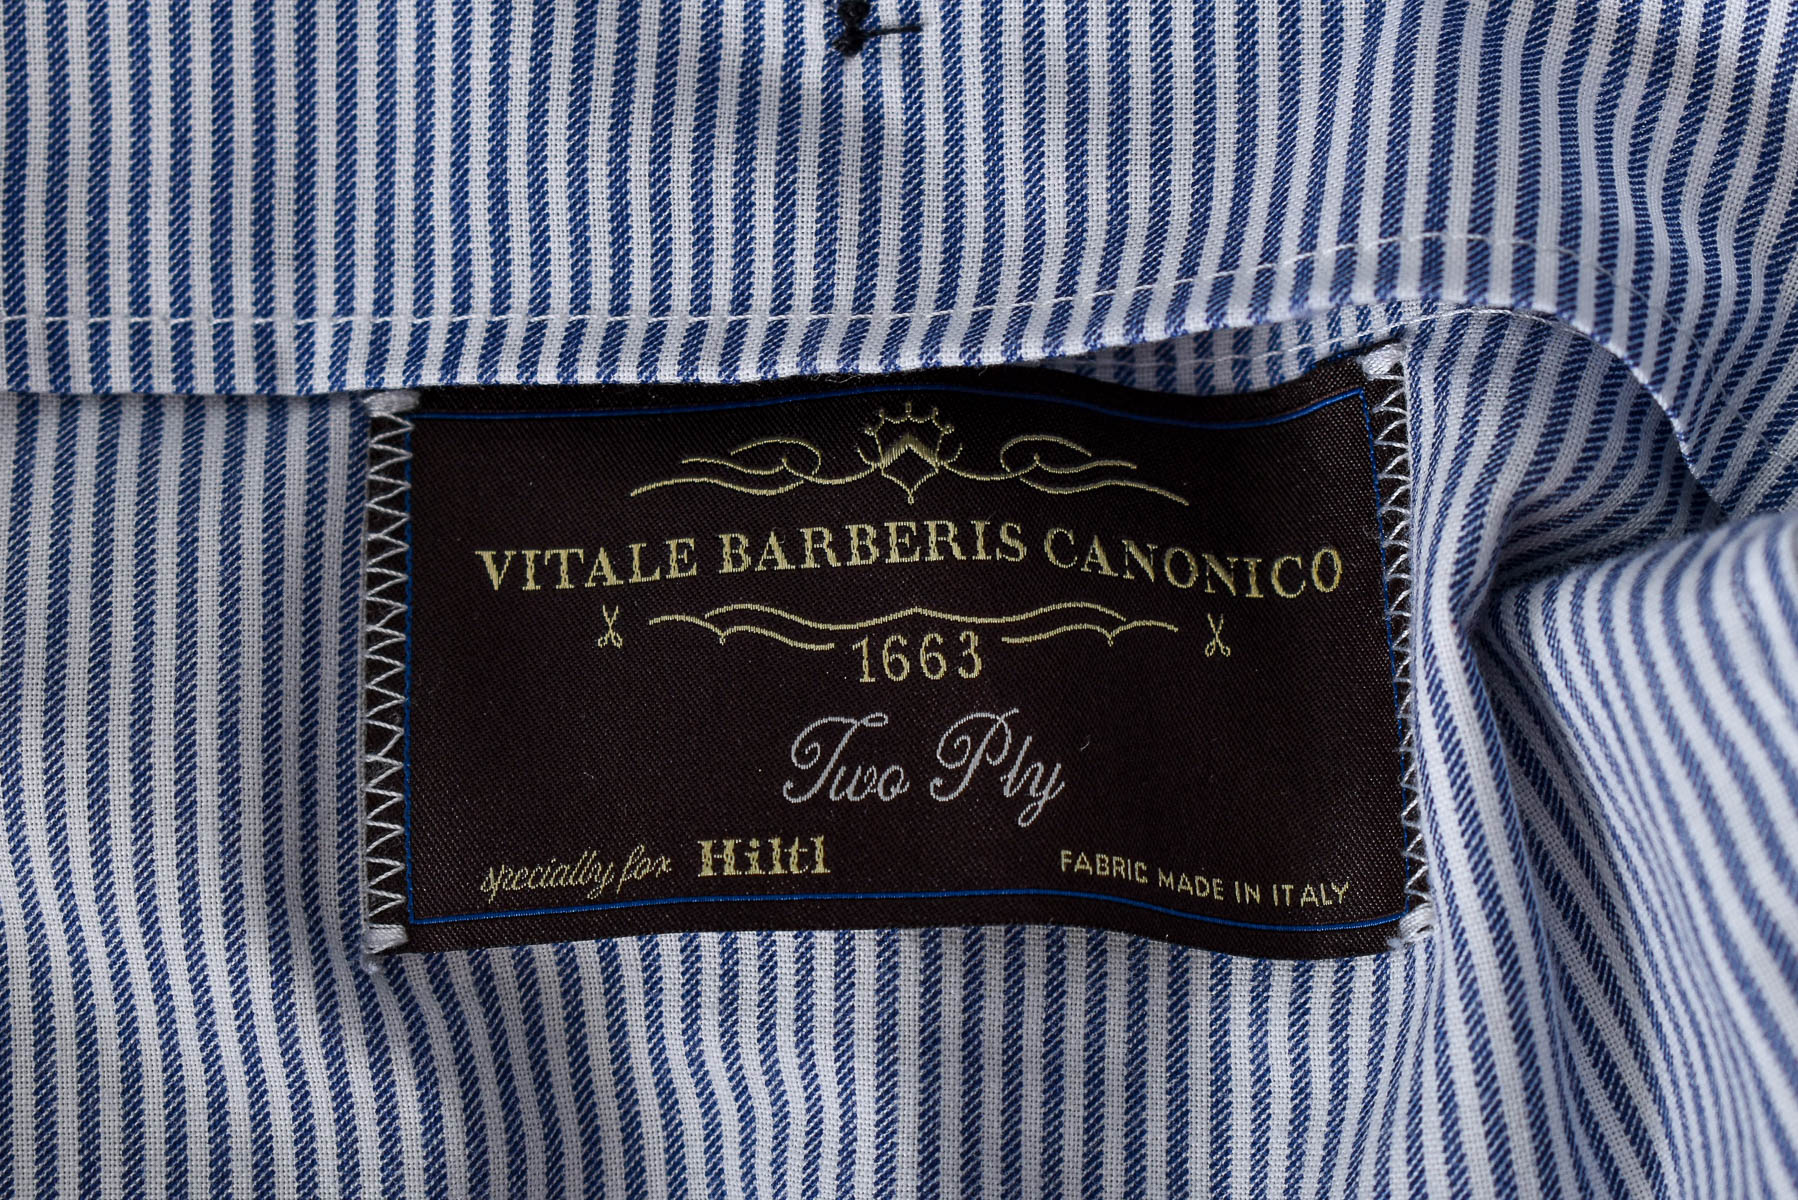 Pantalon pentru bărbați - Vitale Barberis Canonico - 2